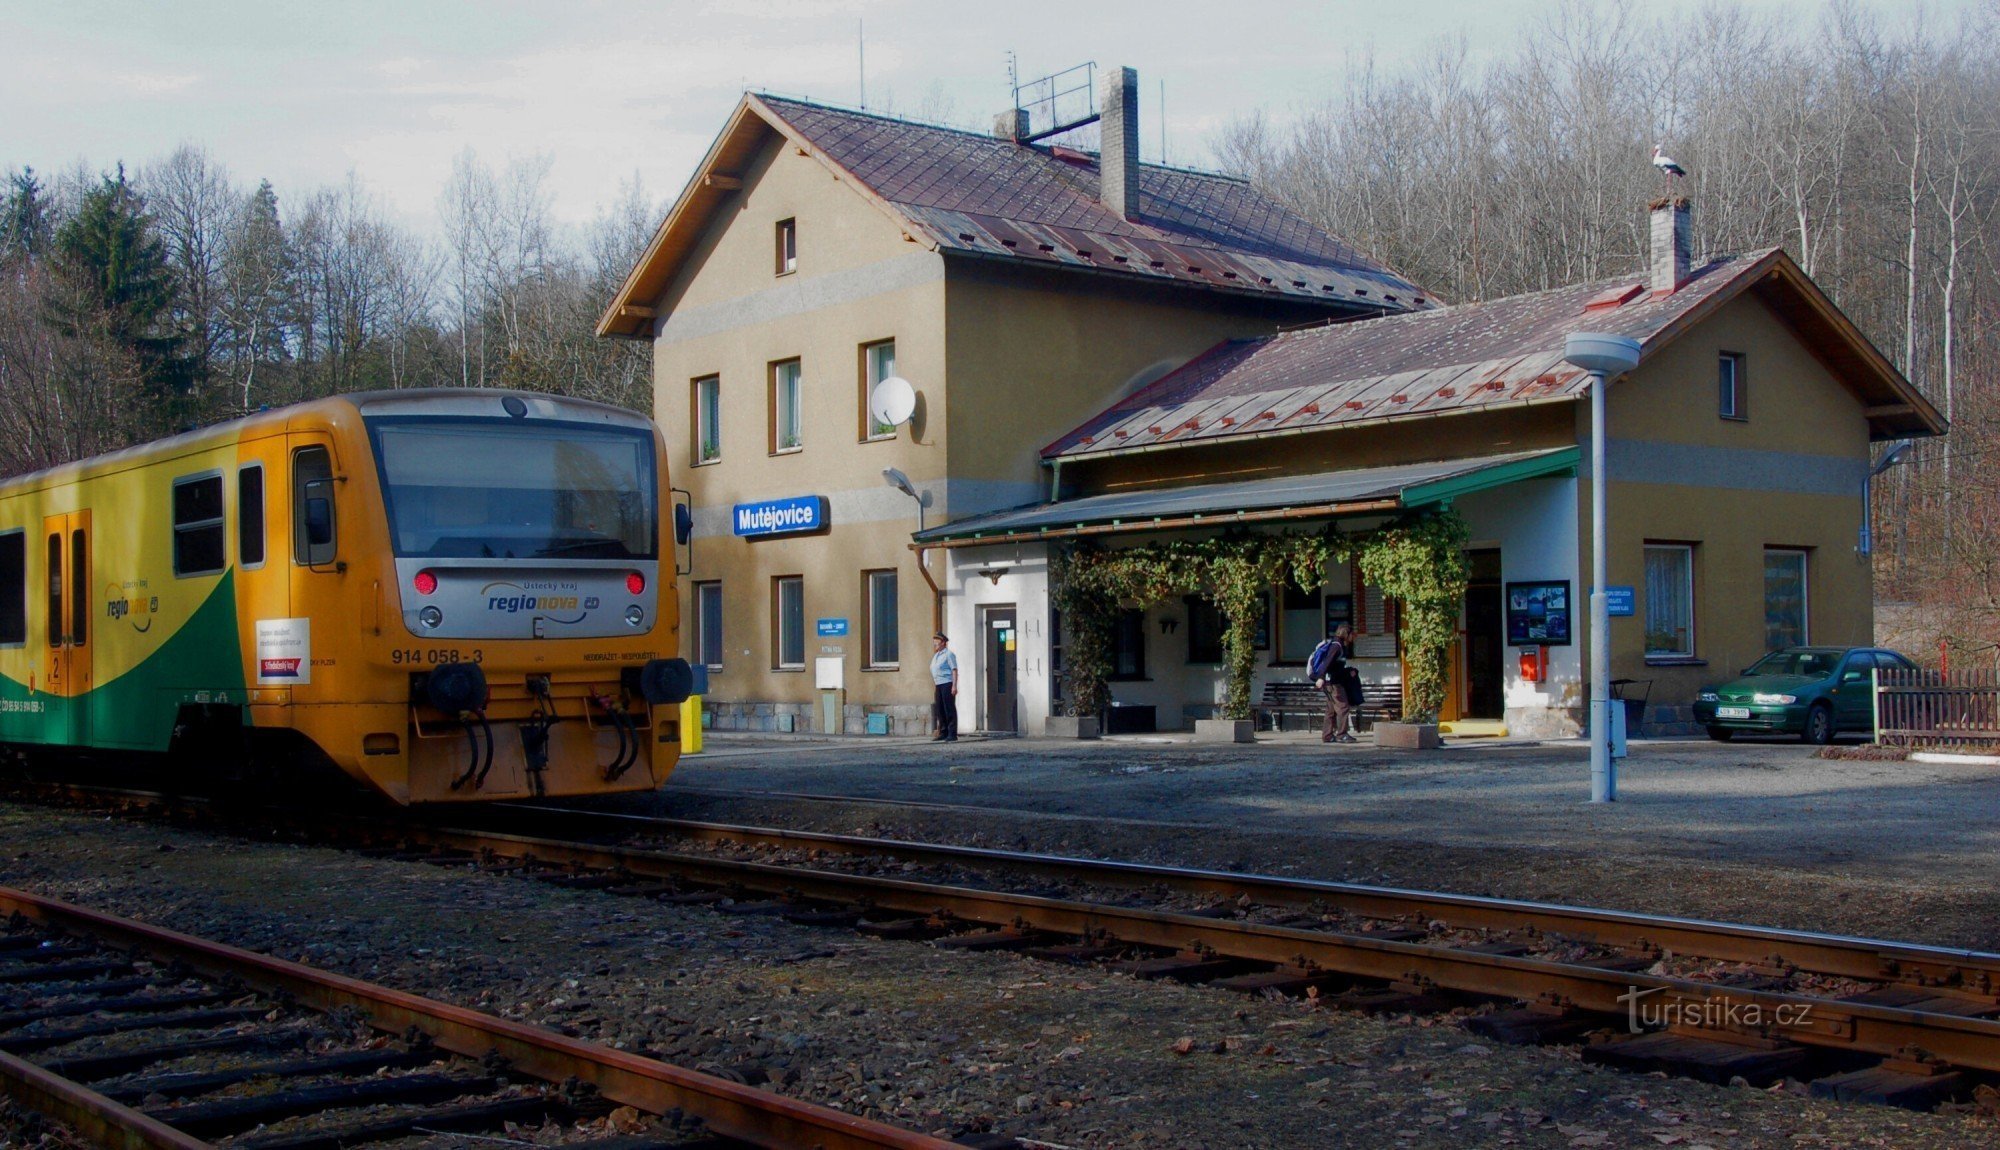 Gare de Mutějovice